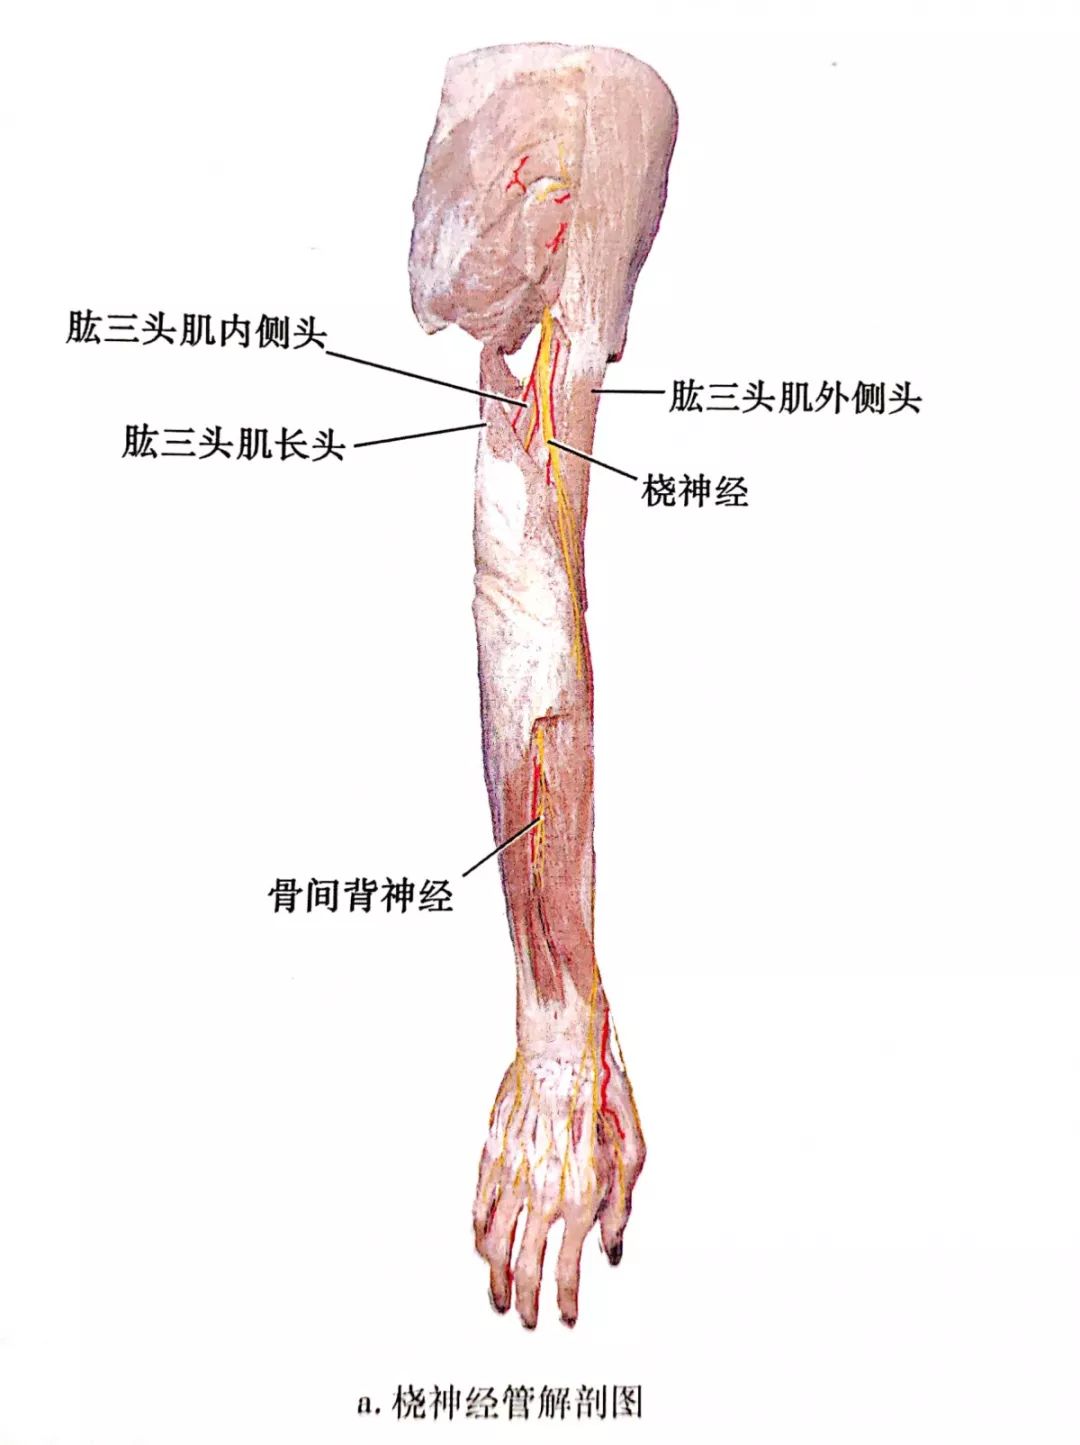 在该处桡神经常常被交叉的腱性肌腱包裹,治疗定点为肱骨外上髁上方10